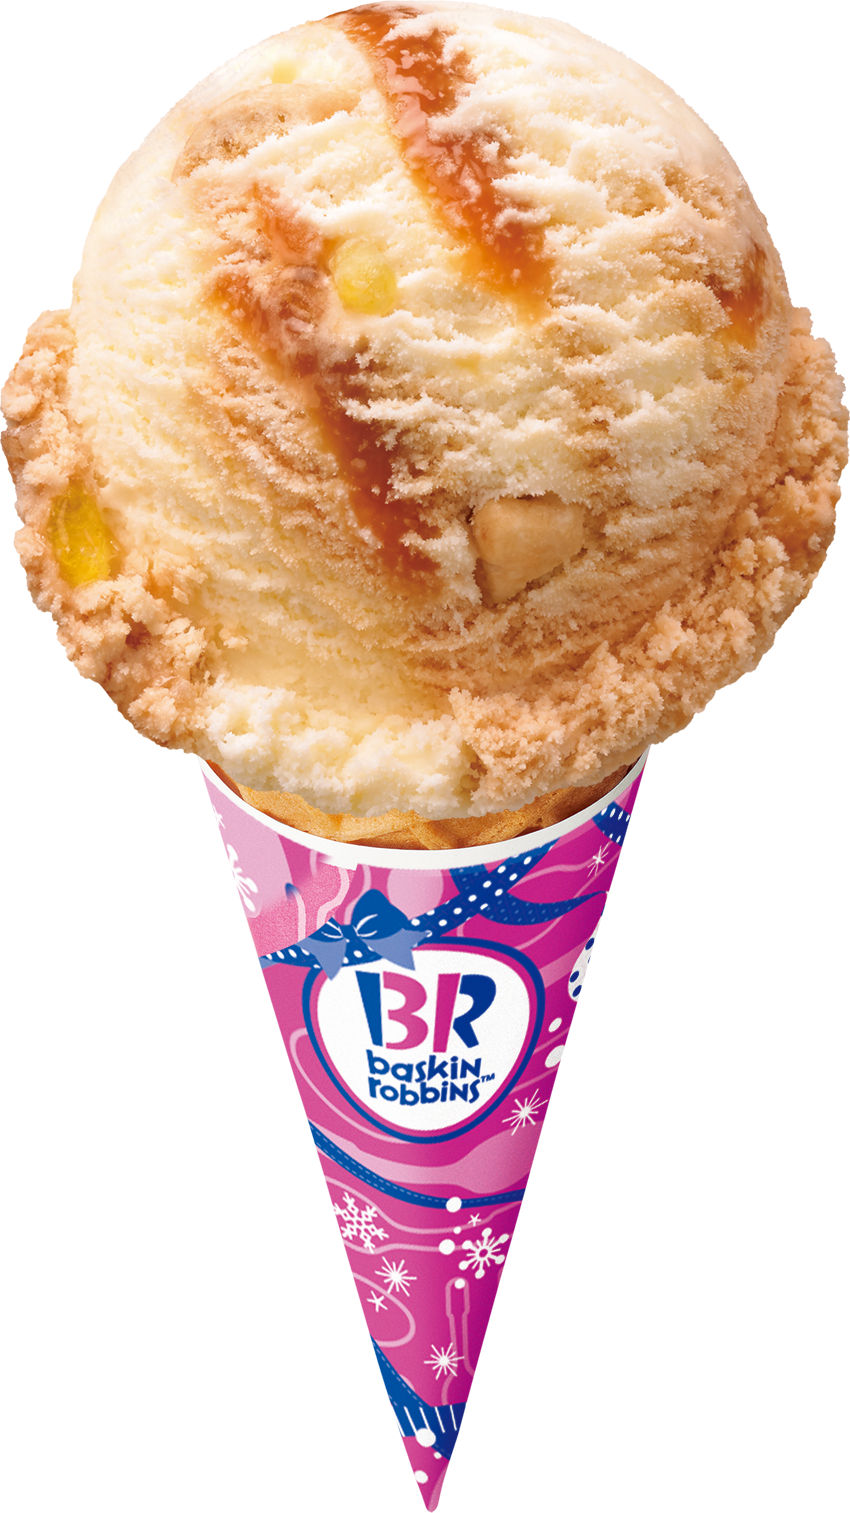 クロカンブッシュをイメージした贅沢なアイスクリーム キャラメル クロカンブッシュ B R サーティワン アイスクリーム株式会社のプレスリリース